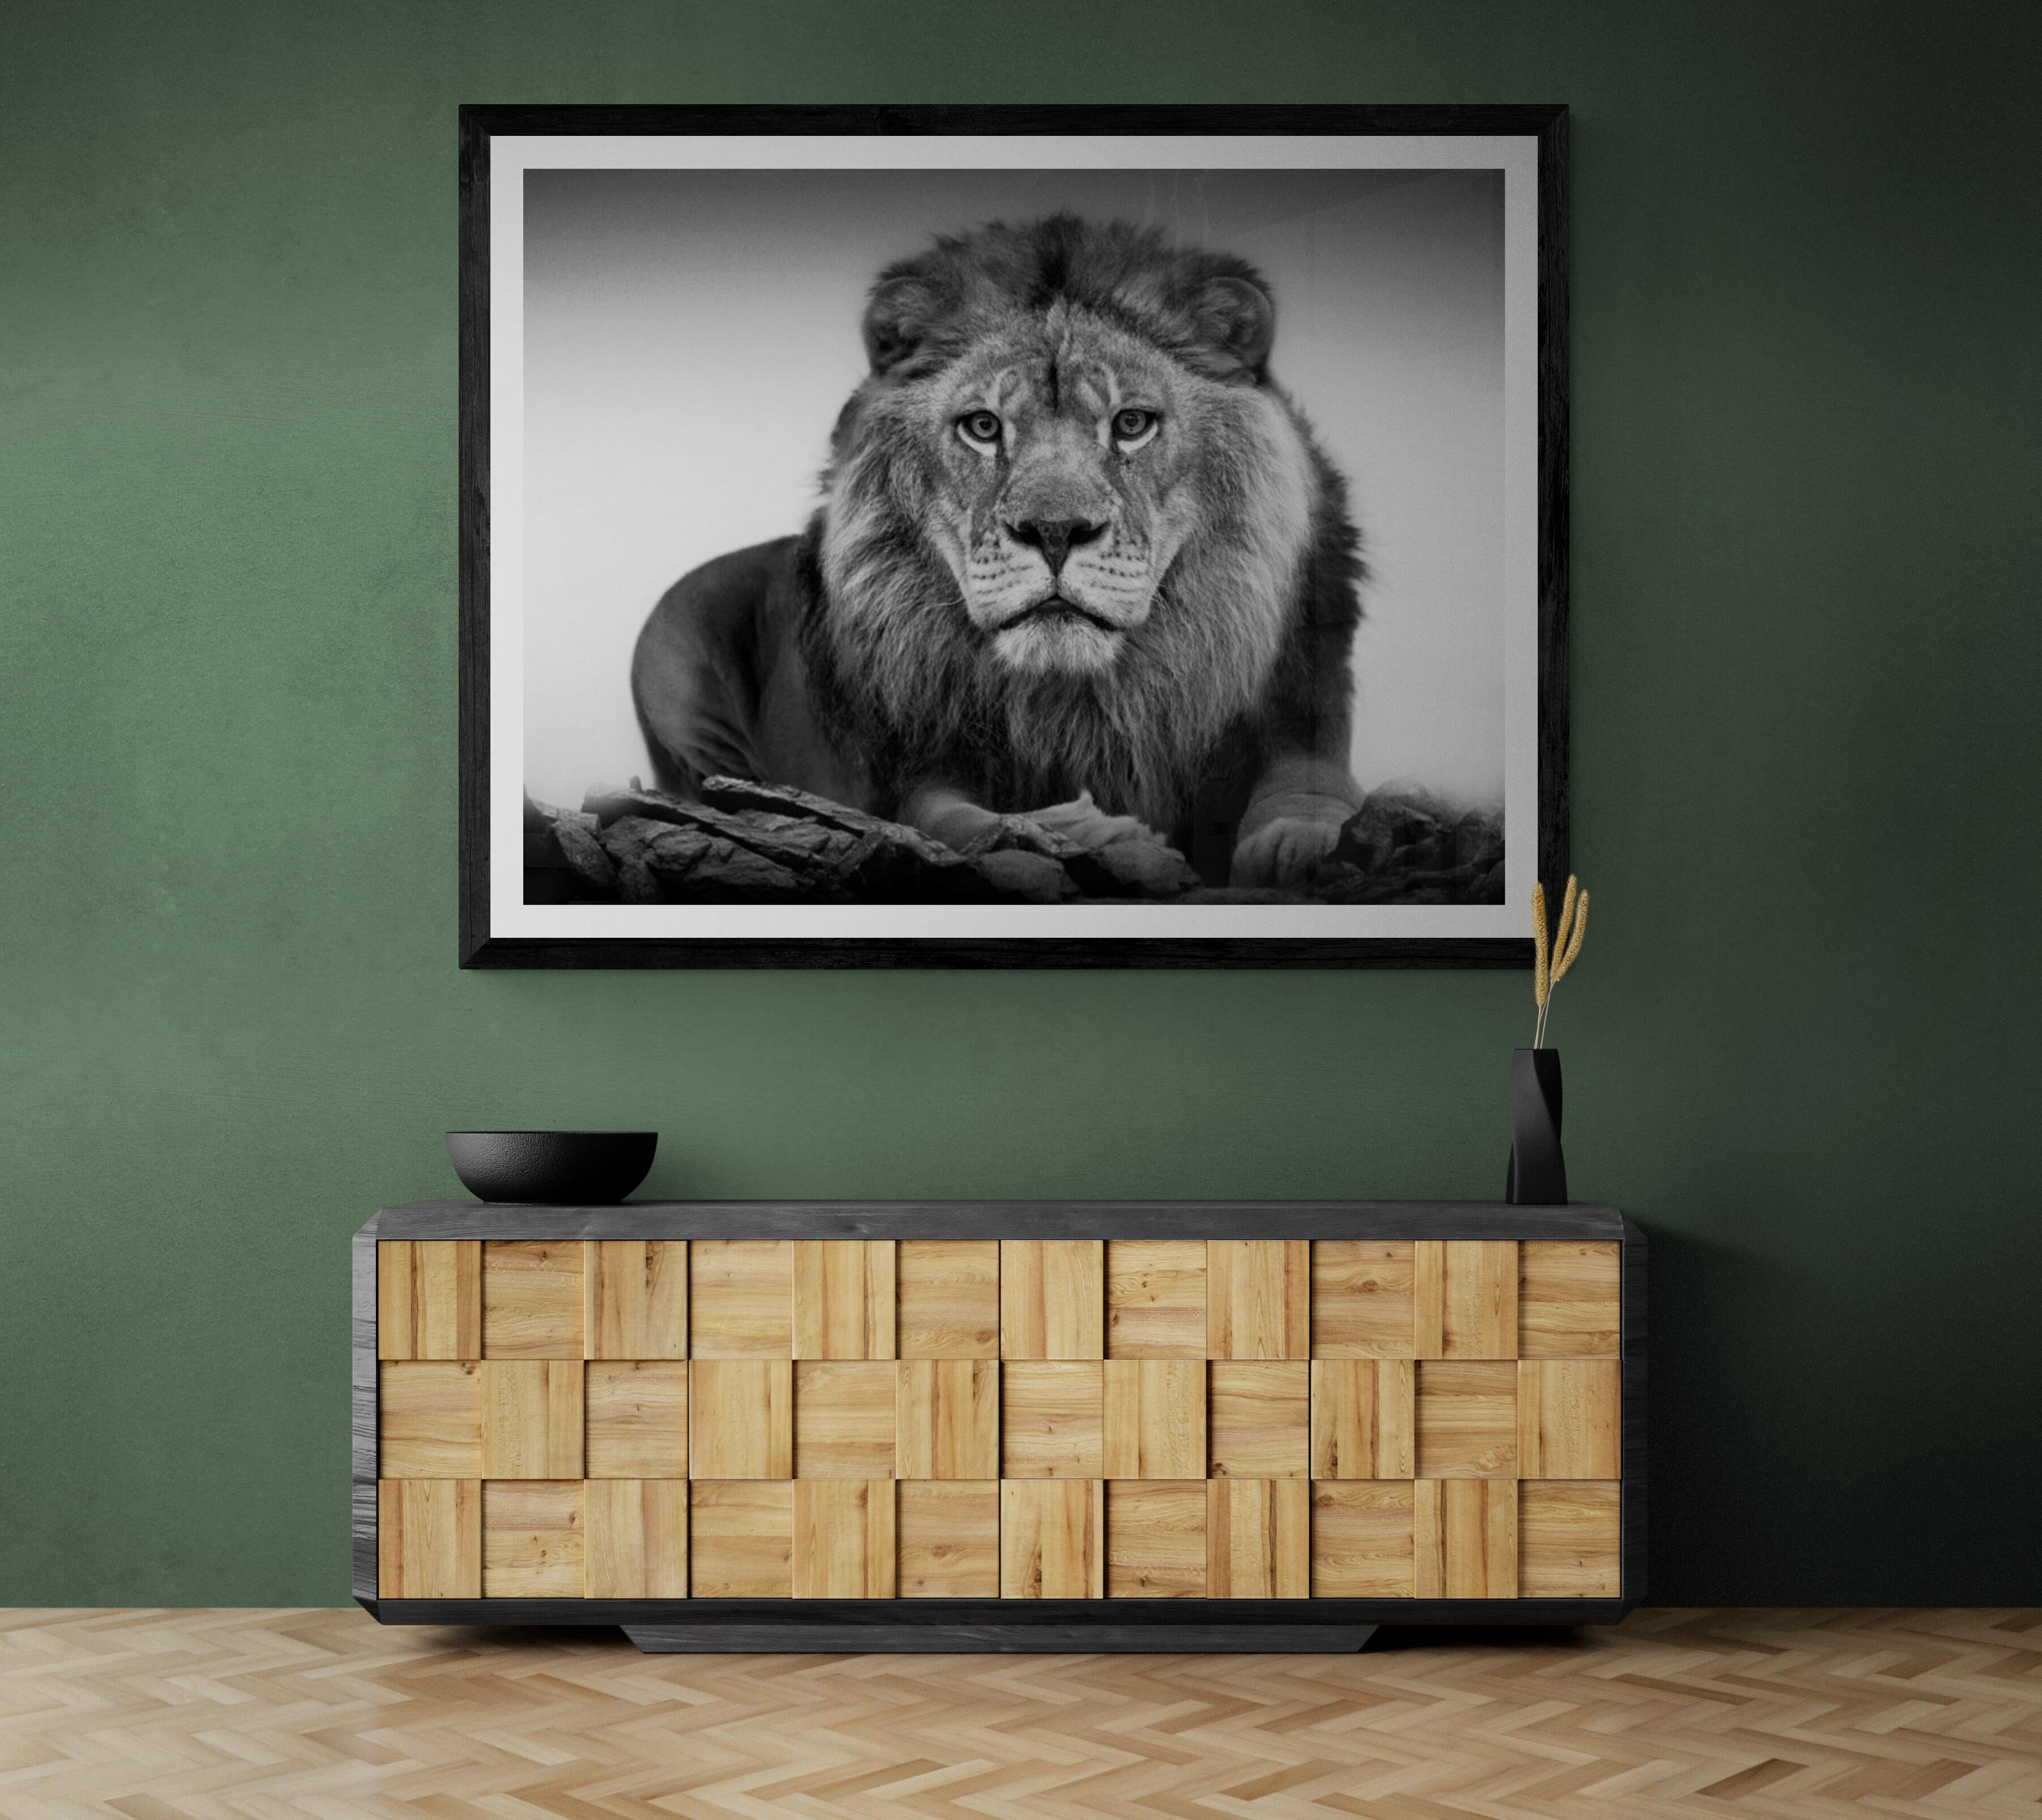 Il s'agit d'une photographie contemporaine d'un lion africain. 
40x60
Non signé  Imprimer
Impression au pigment d'archivage.
Encadrement disponible. Renseignez-vous sur les tarifs. 

LIVRAISON GRATUITE

Shane Russeck s'est forgé une réputation en